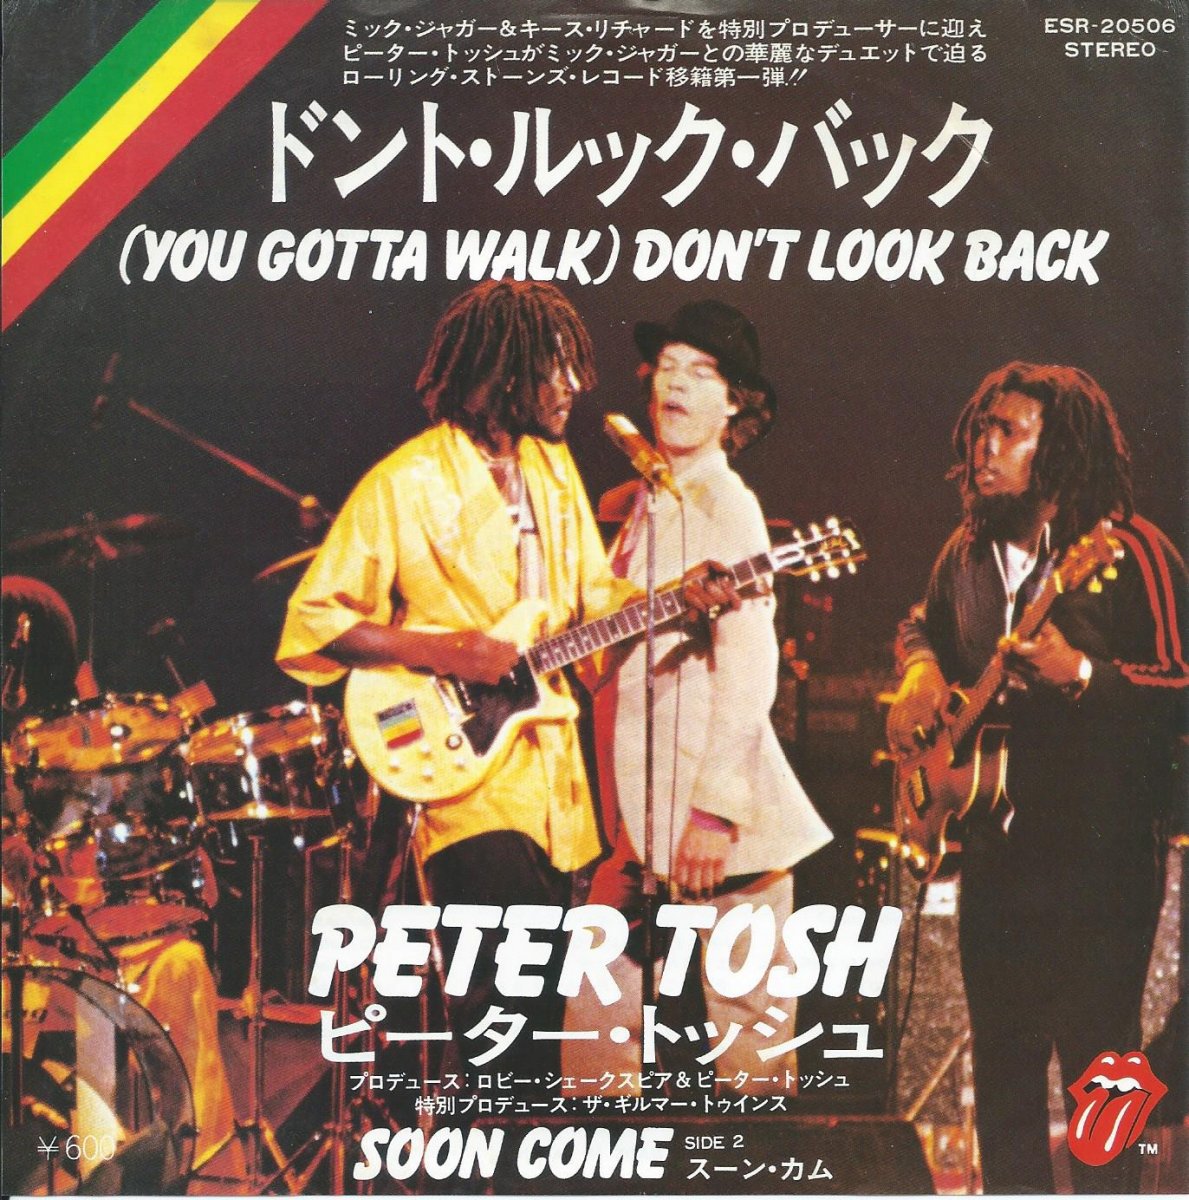 ピーター・トッシュ PETER TOSH / ドント・ルック・バック (YOU GOTTA WALK) DON'T LOOK BACK (7) -  HIP TANK RECORDS